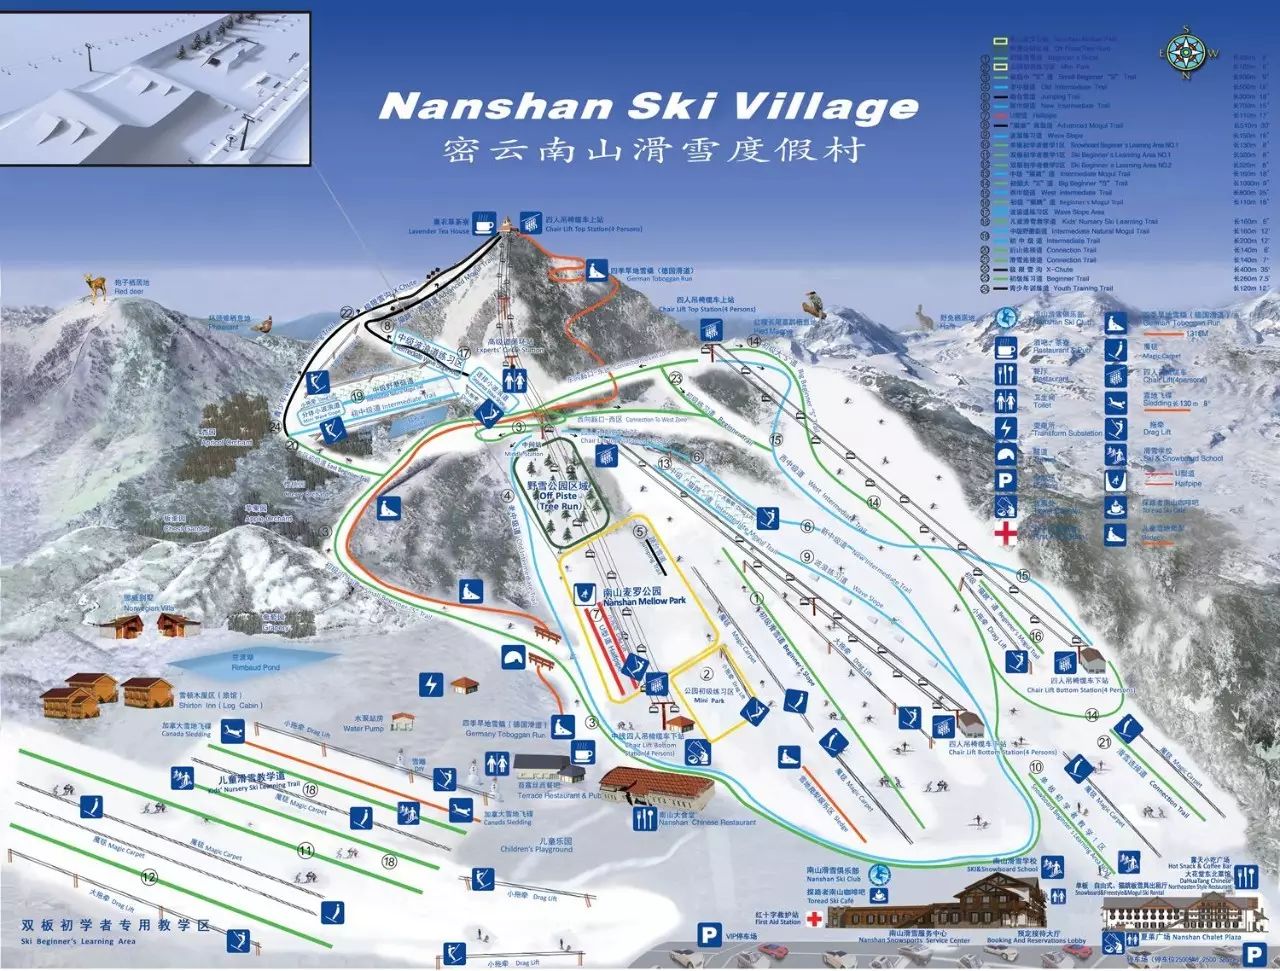 雪道情况:南山滑雪场拥有高,中,初级滑雪道,教学道和娱雪道共23条